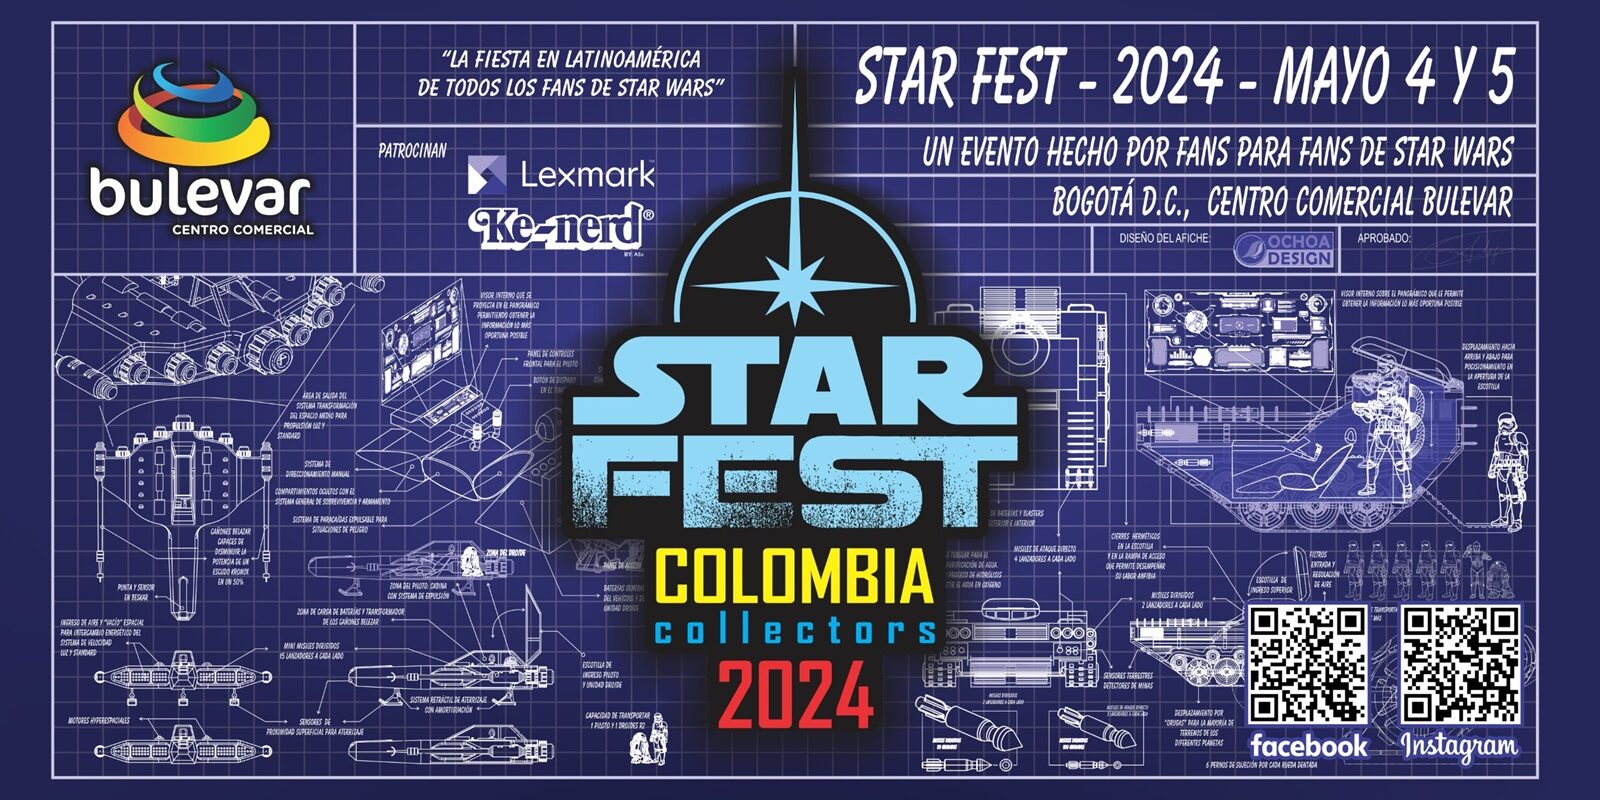 Una feria para los fans de Star Wars en Colombia - Estilo Digital